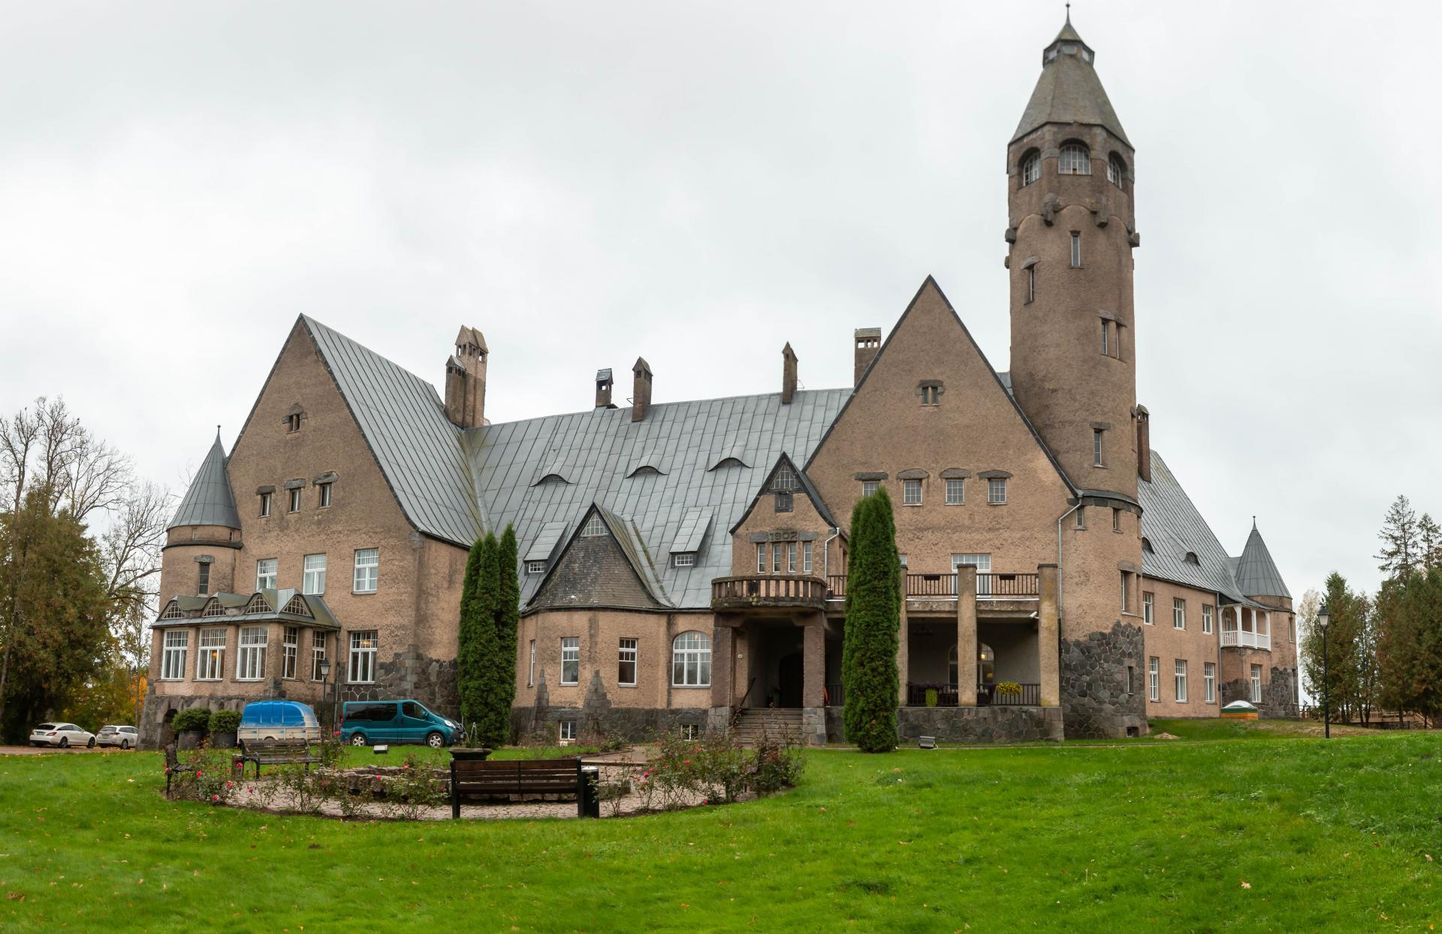 Марис Рейманн, директор компании Wagenküll Hotell OÜ, которая работает в замке Таагепера в волости Тырва, заявила, что значительное повышение налога с оборота на размещение является фатальным для них.